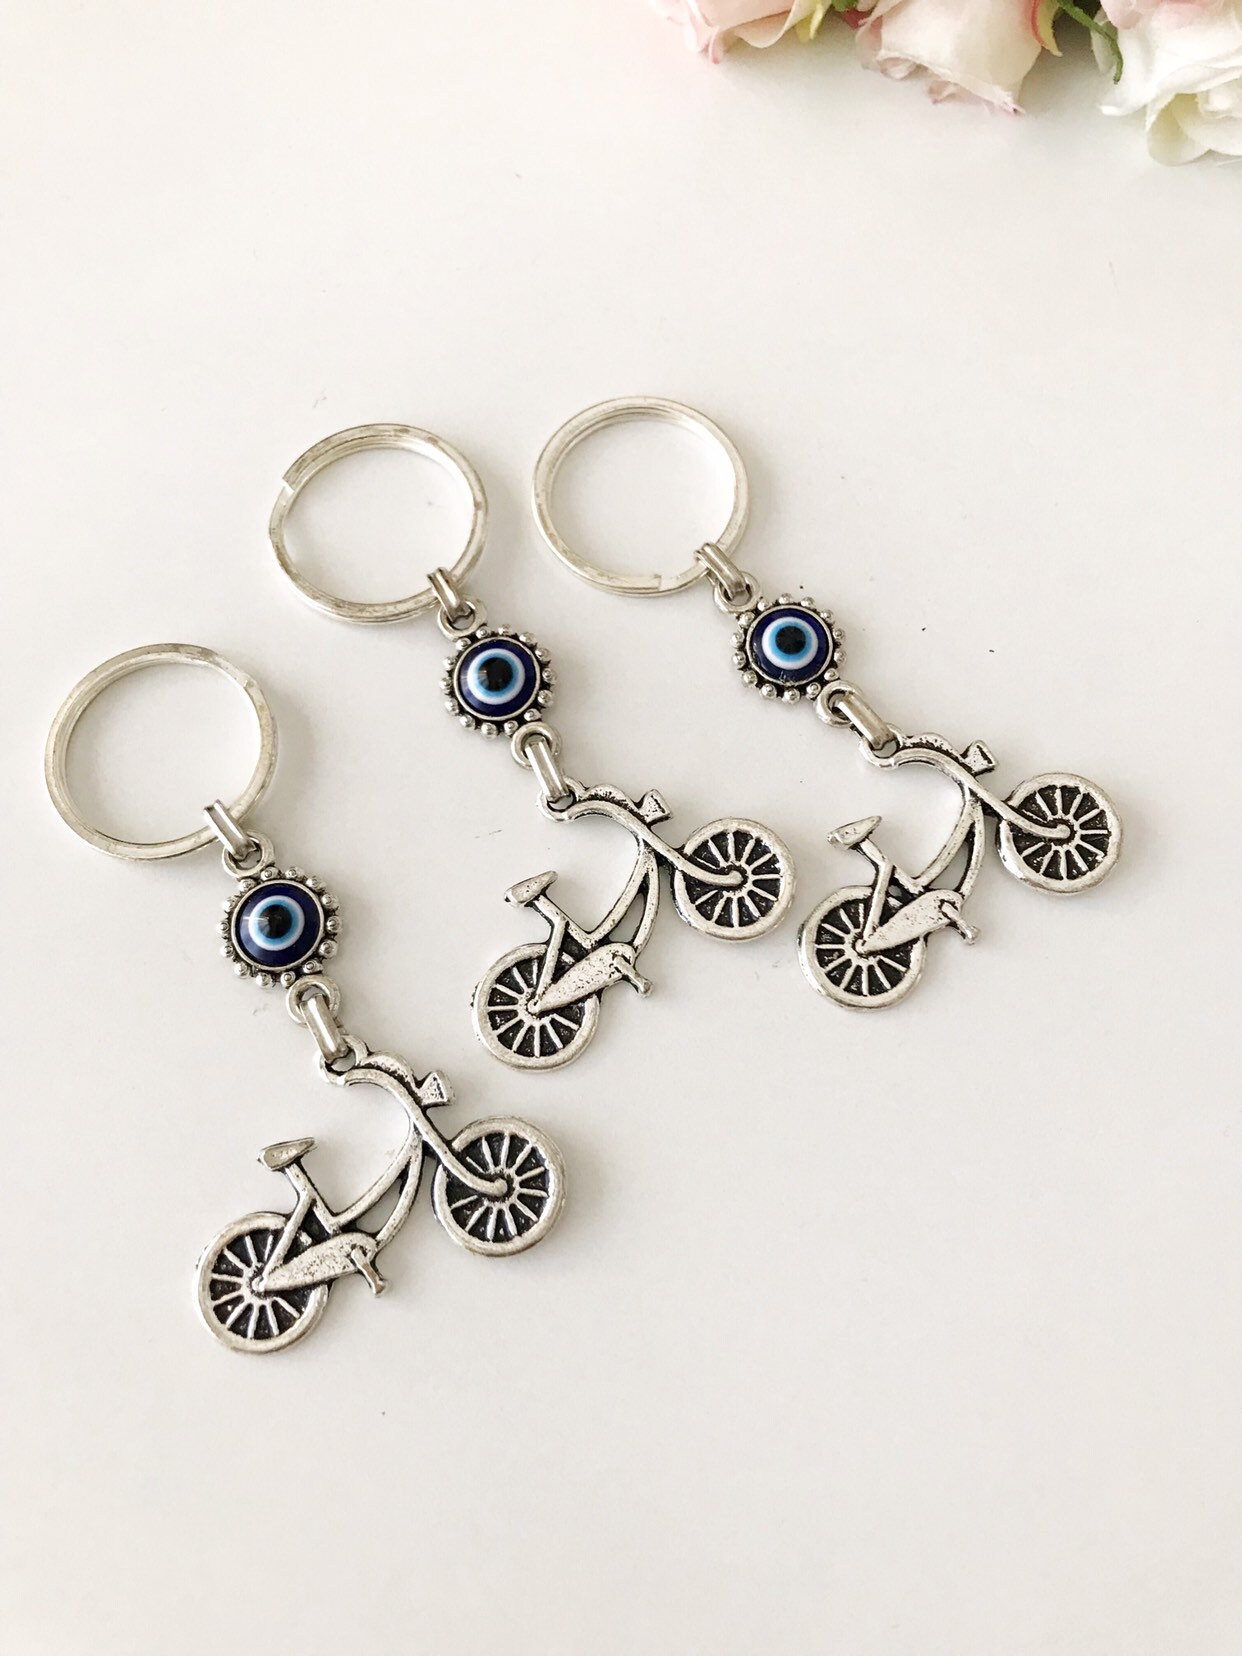 Evileyefavor Lucky Owl Keychain with Evil Eye Protection Blue